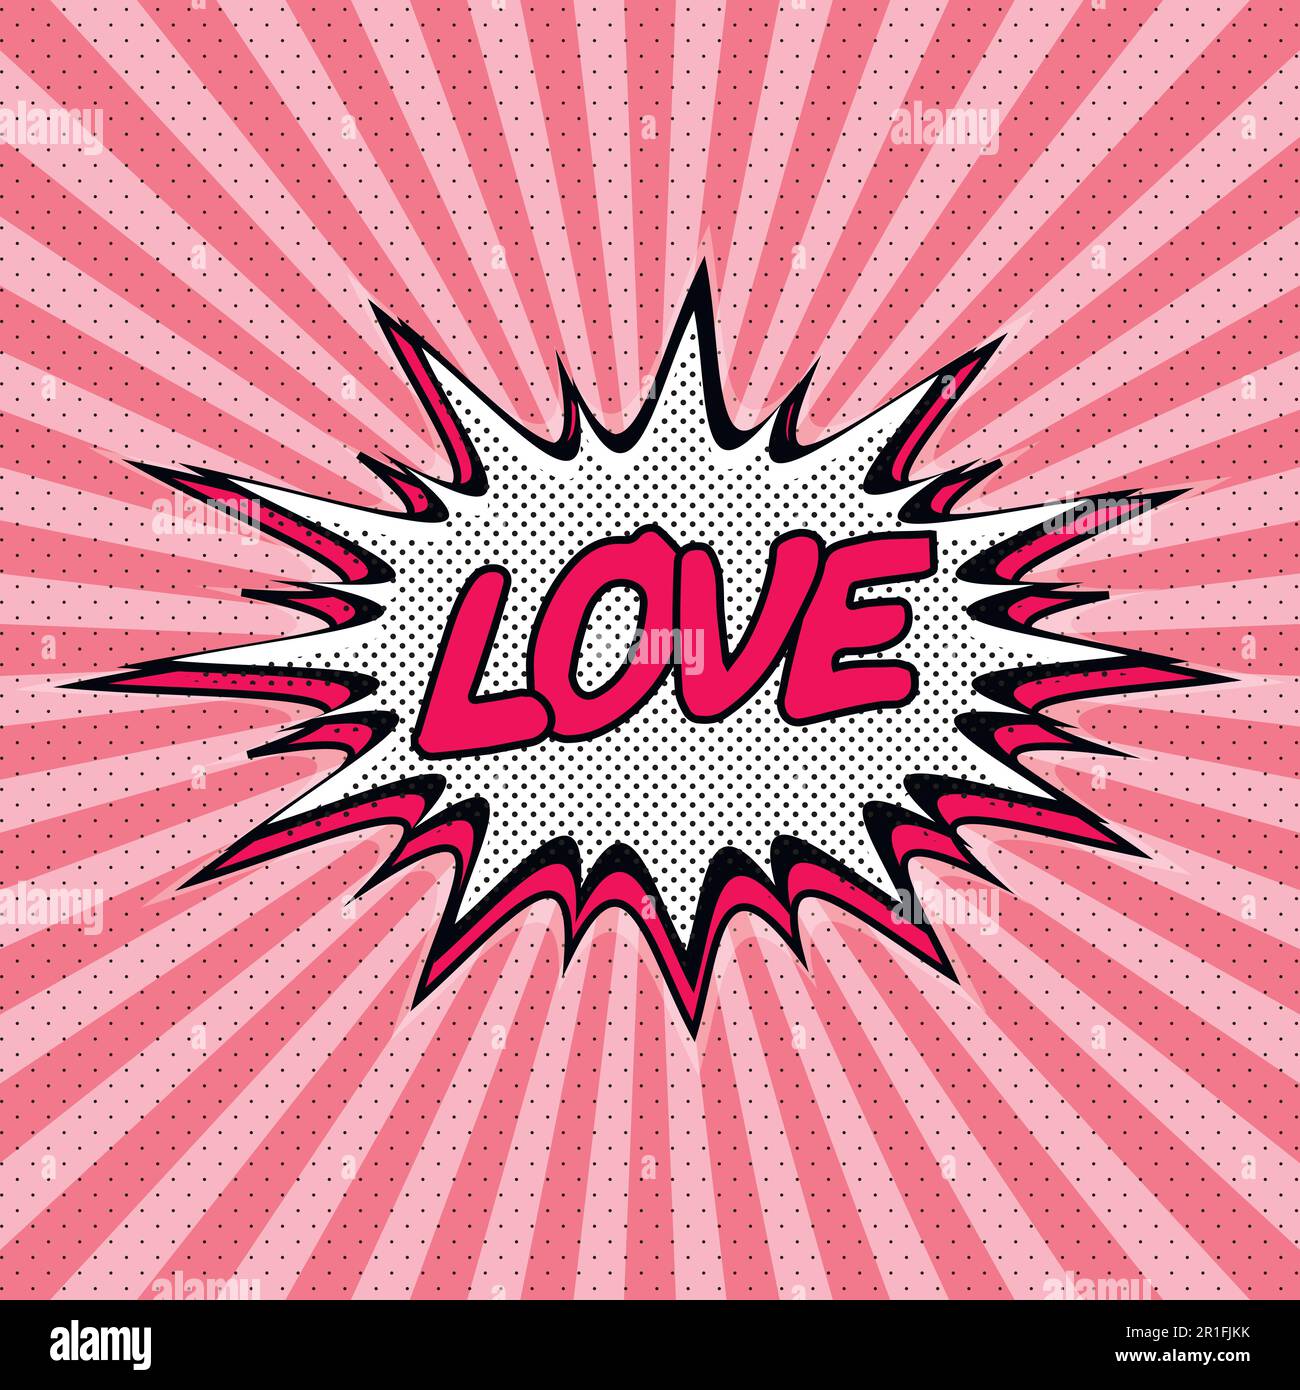 Declaration of love pop art Stock Vector